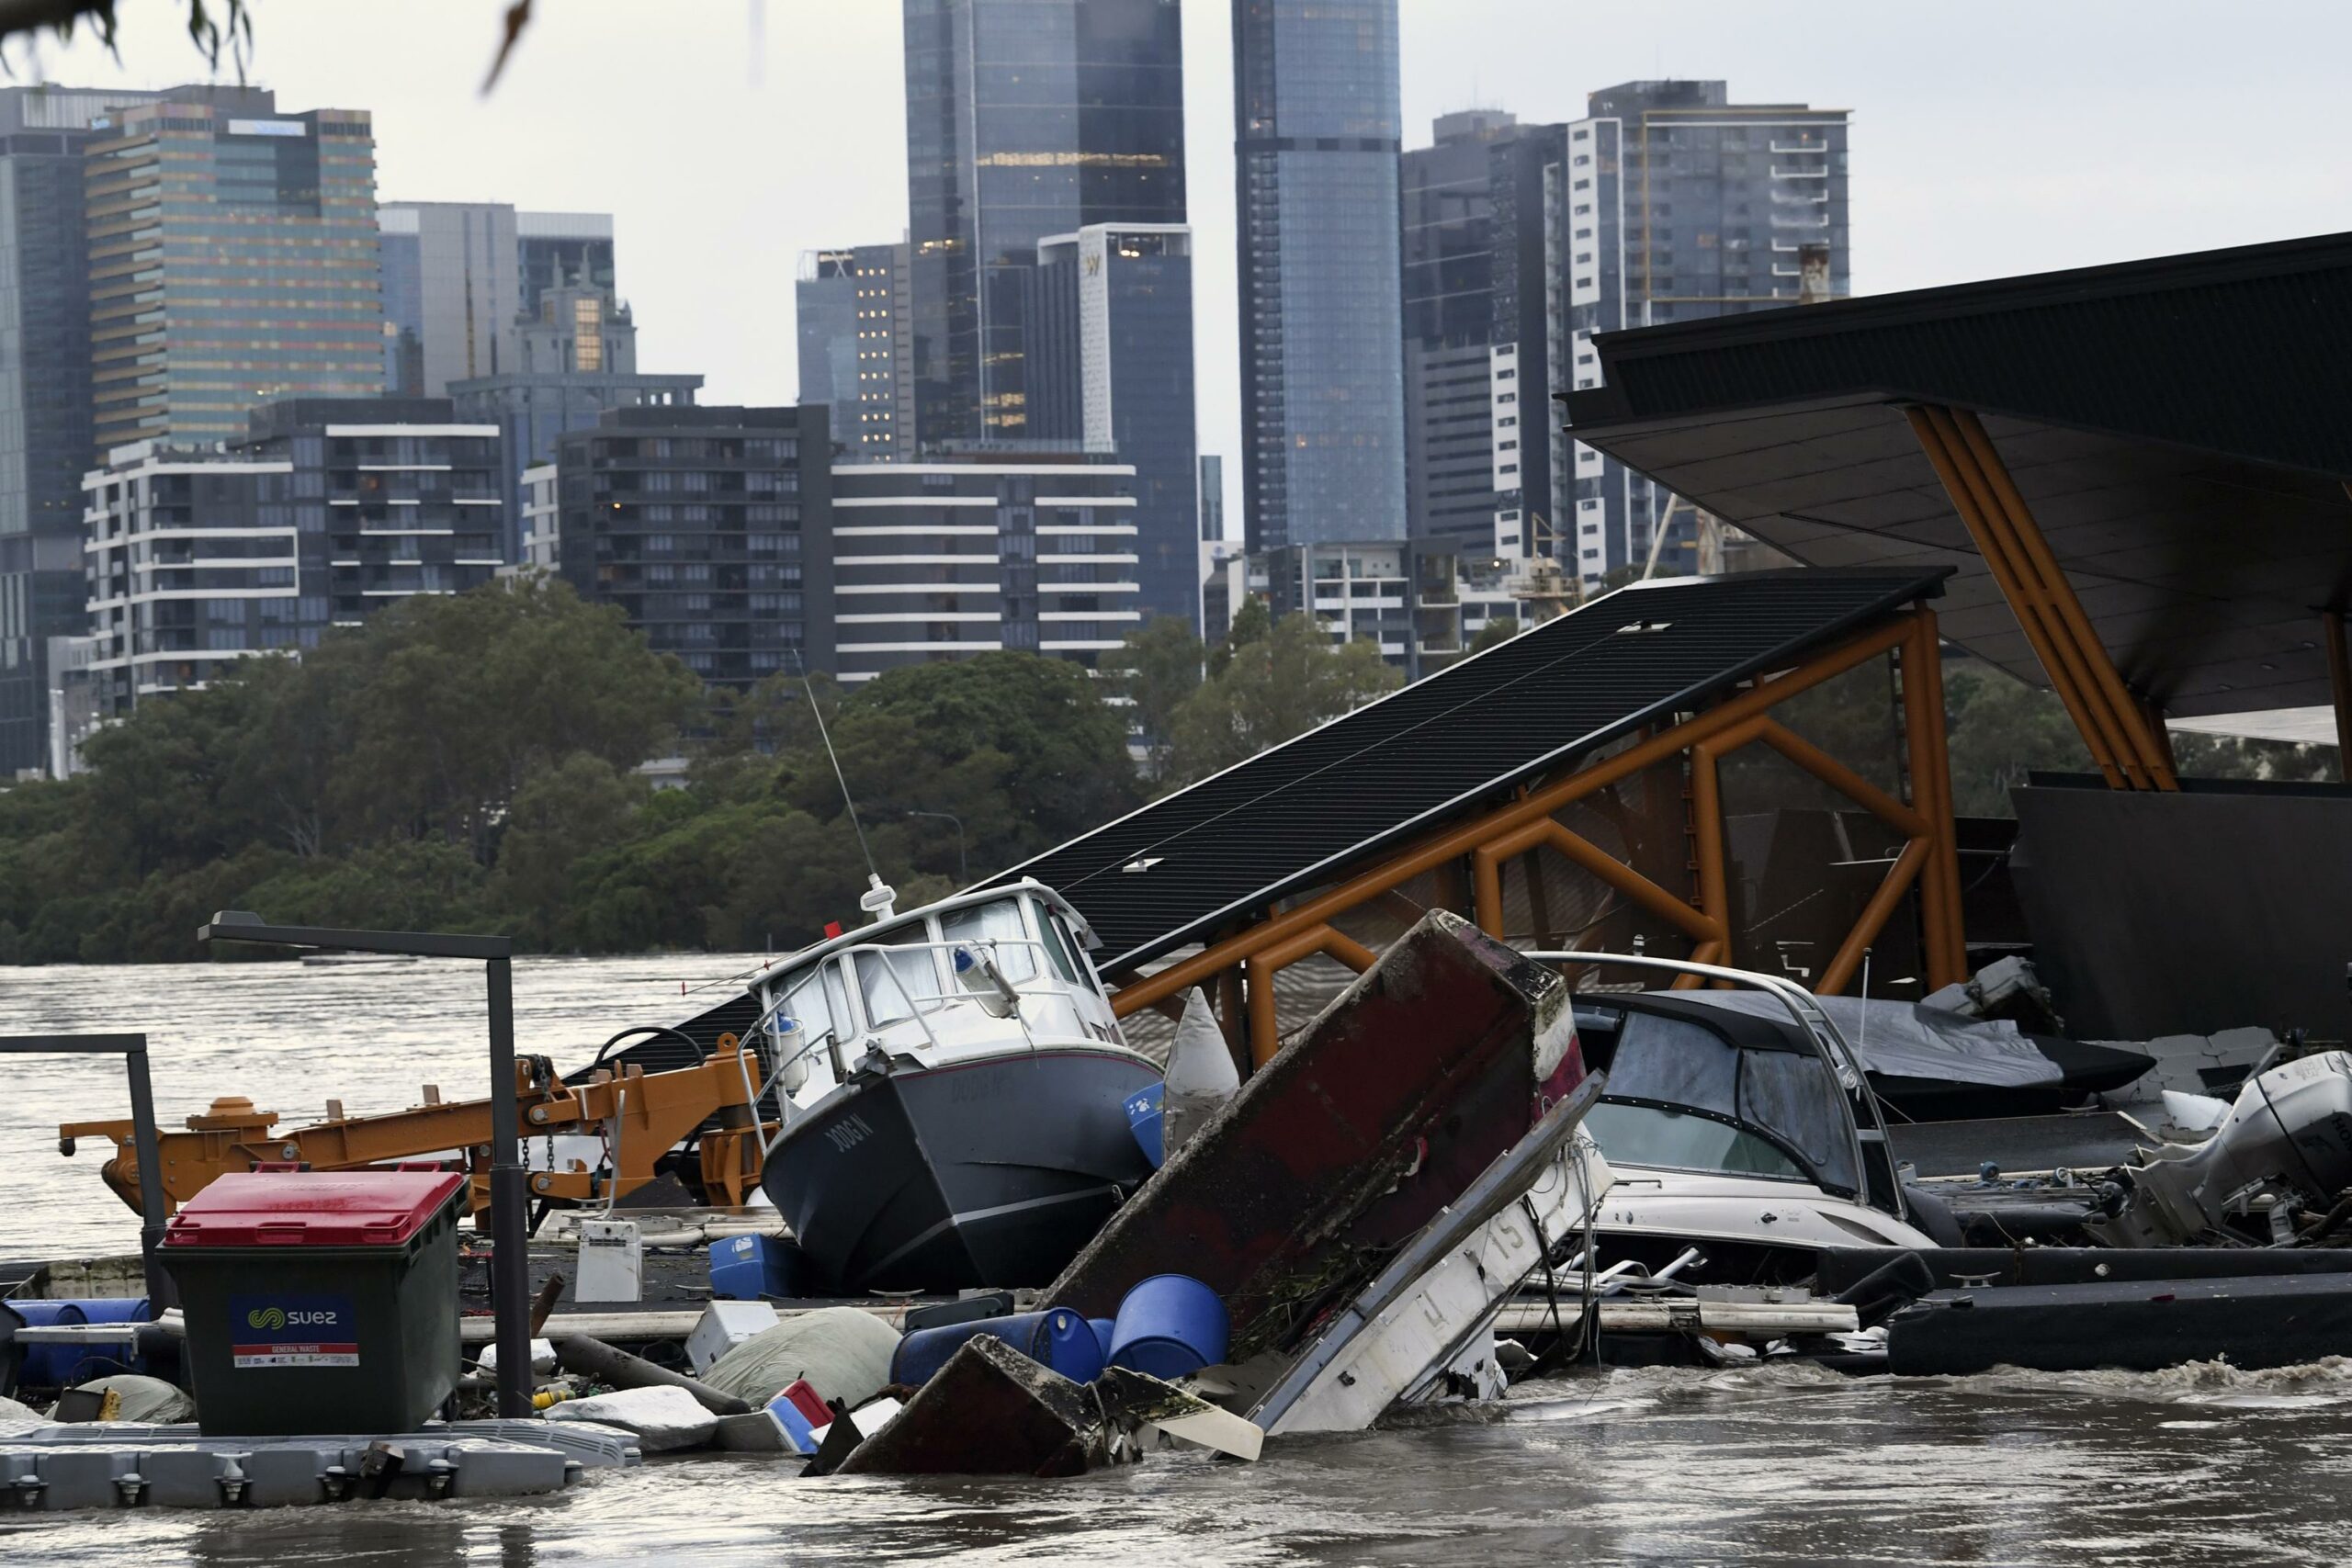 Major floods hit Australia’s east coast, claiming 7 lives